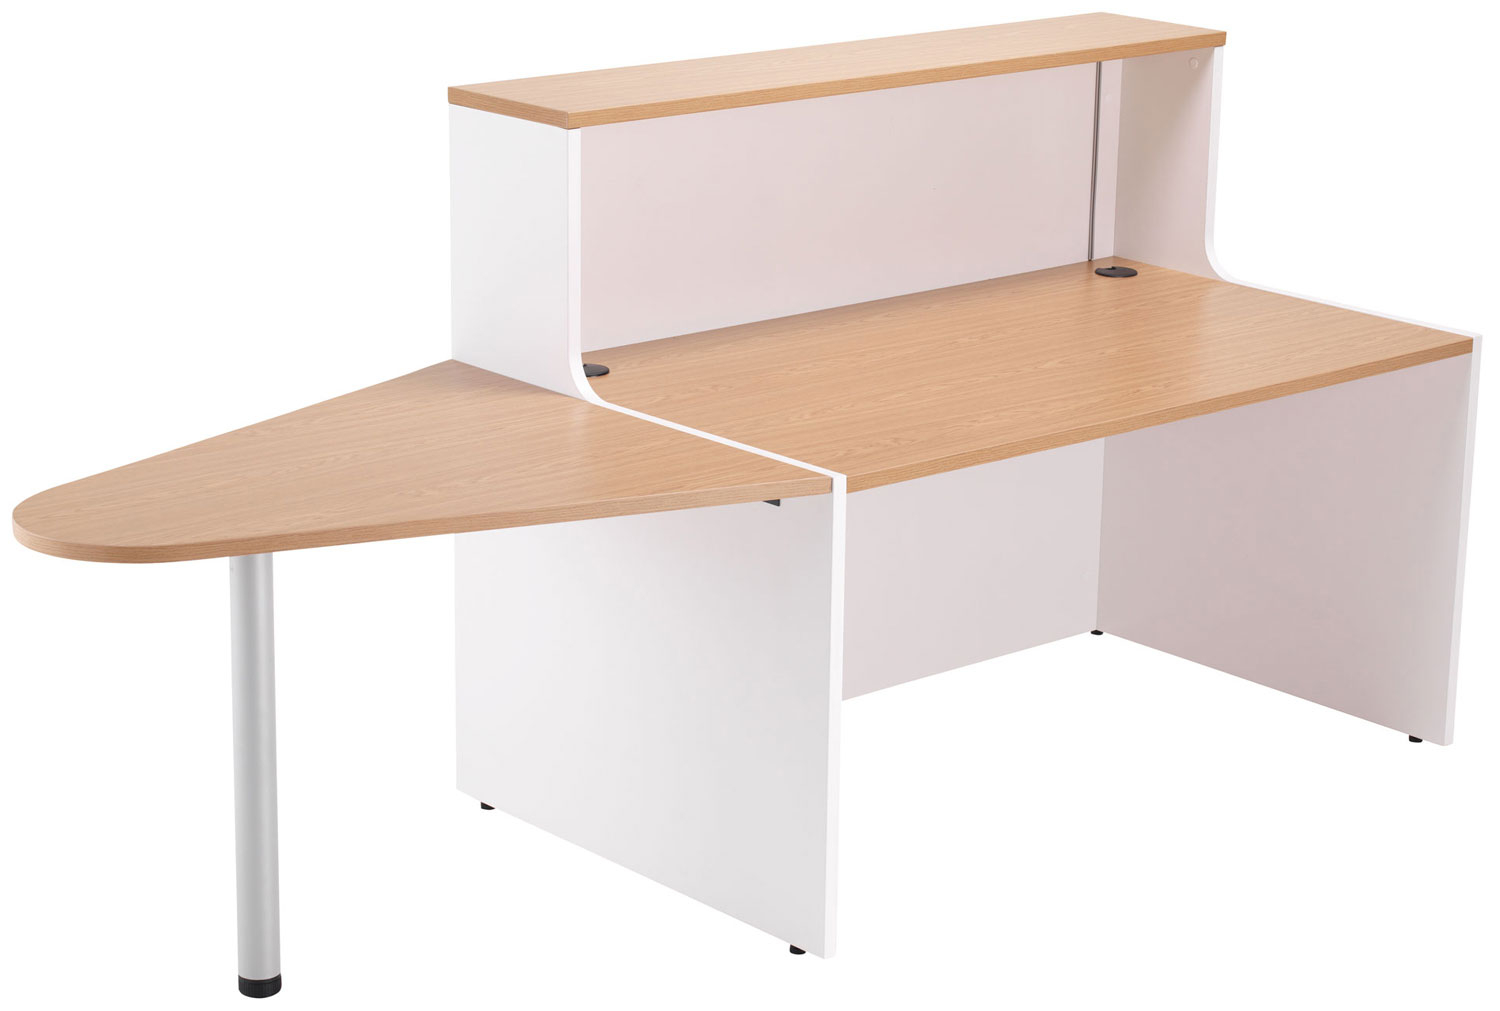 Progress Reception Desk With Extension, 240wx80dx74/117h (cm), White Panel, Oak Top